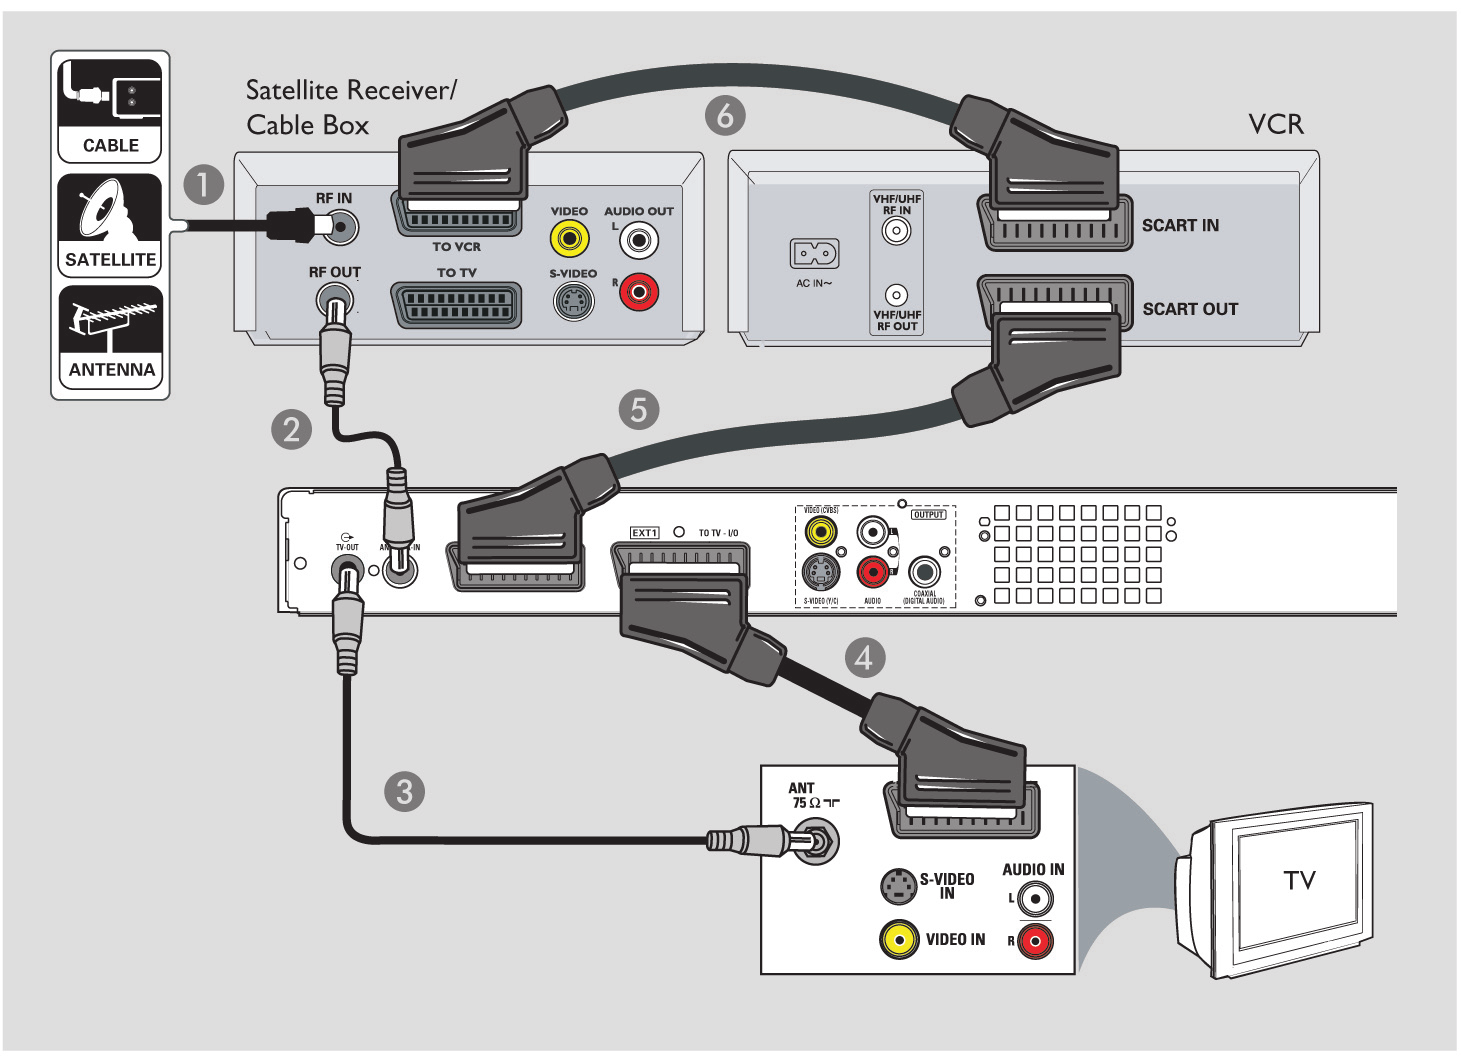 2. lépés: További csatlakozások Mûholdvevõ/ kábeldekóder Videomagnó Csatlakoztatás videomagnóhoz és kábeldekóderhez/műholdvevőhöz Tartsa meg a már meglévő RF összeköttetést a kábeldekóder/műholdvevő